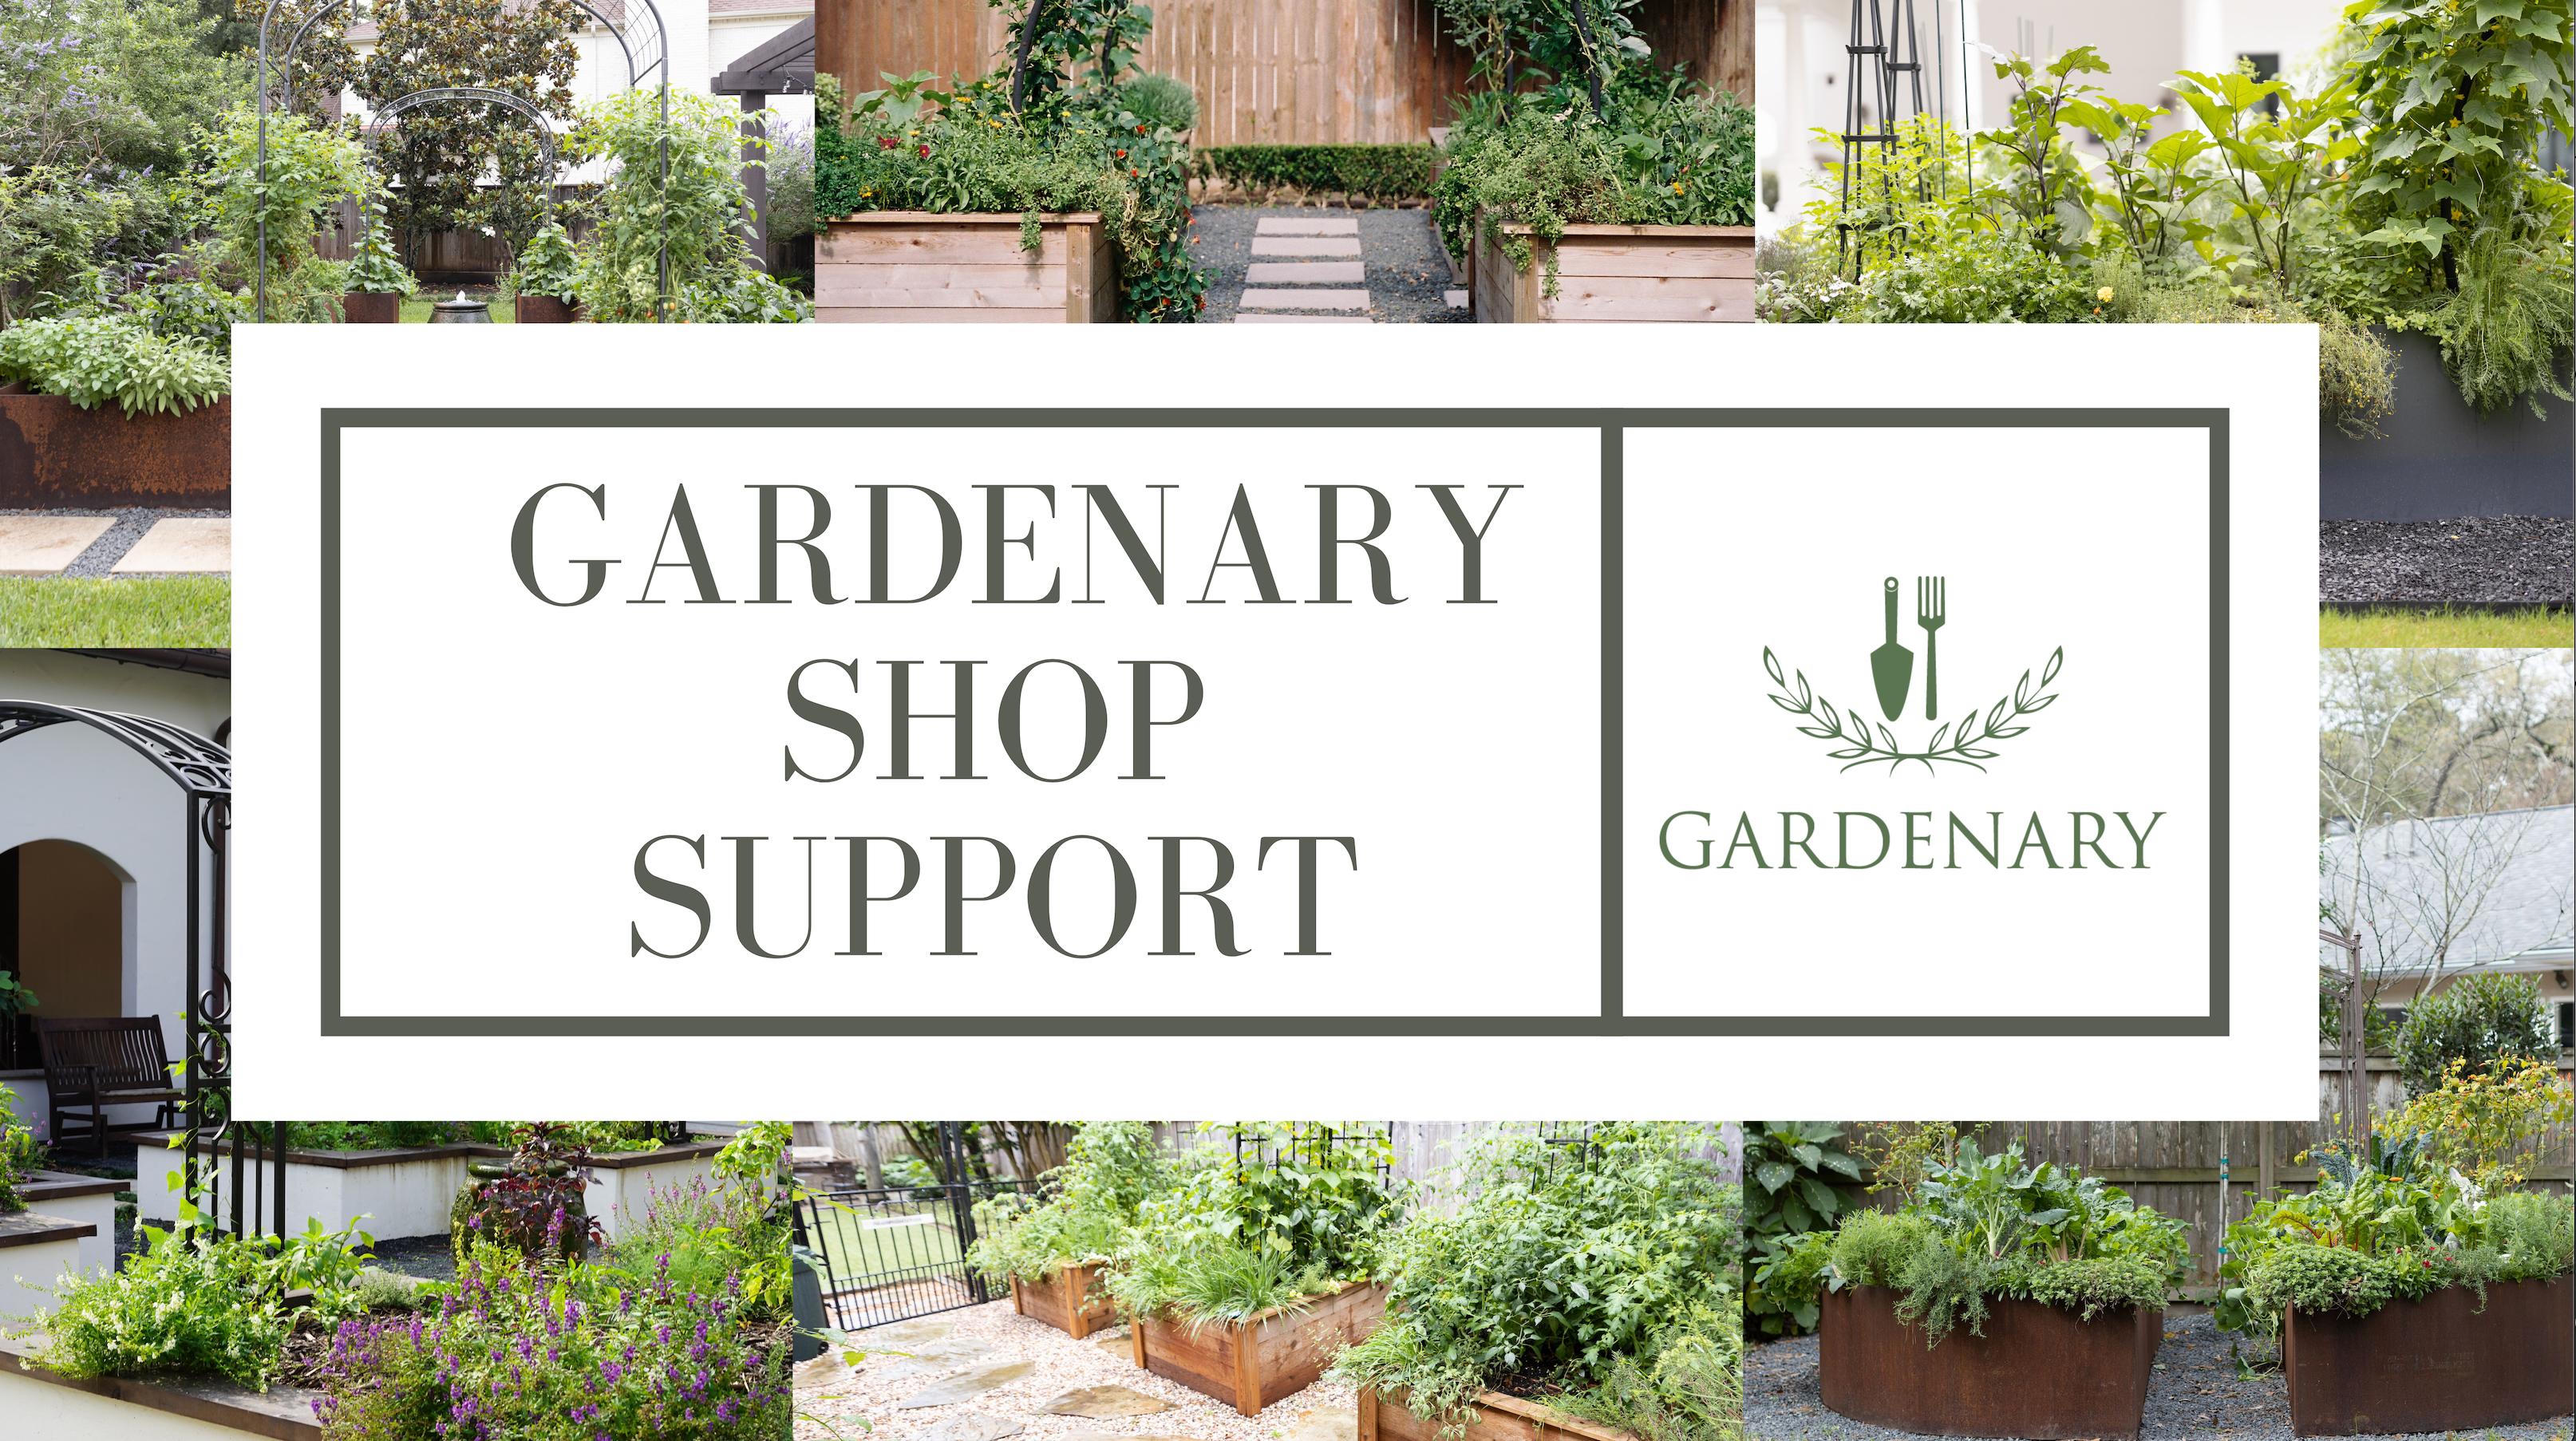 Gardenary Shop Support